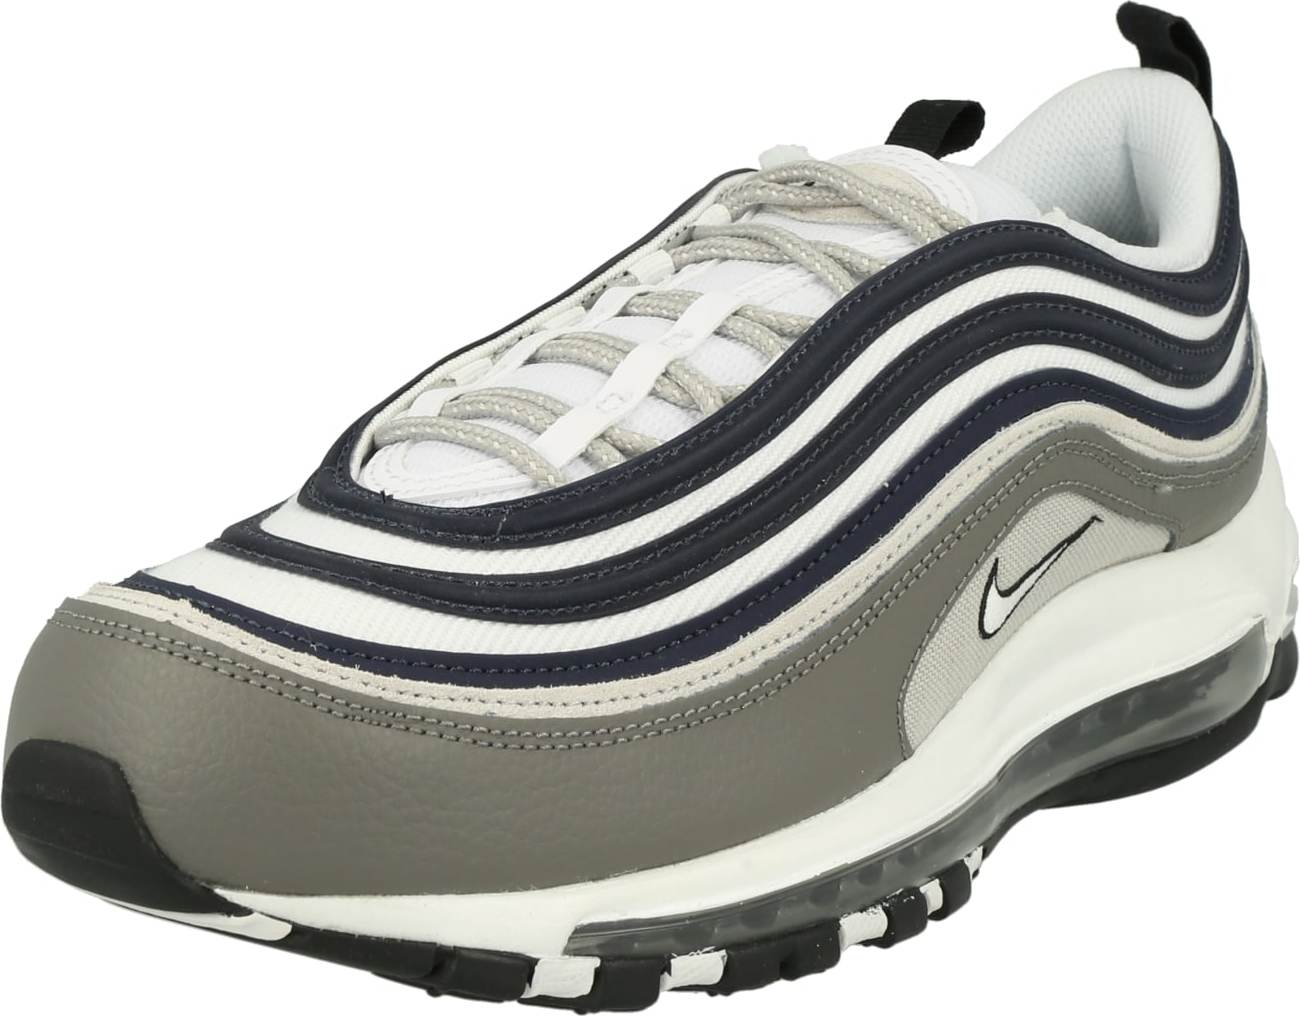 Tenisky 'AIR MAX 97 SE' Nike Sportswear šedá / černá / bílá